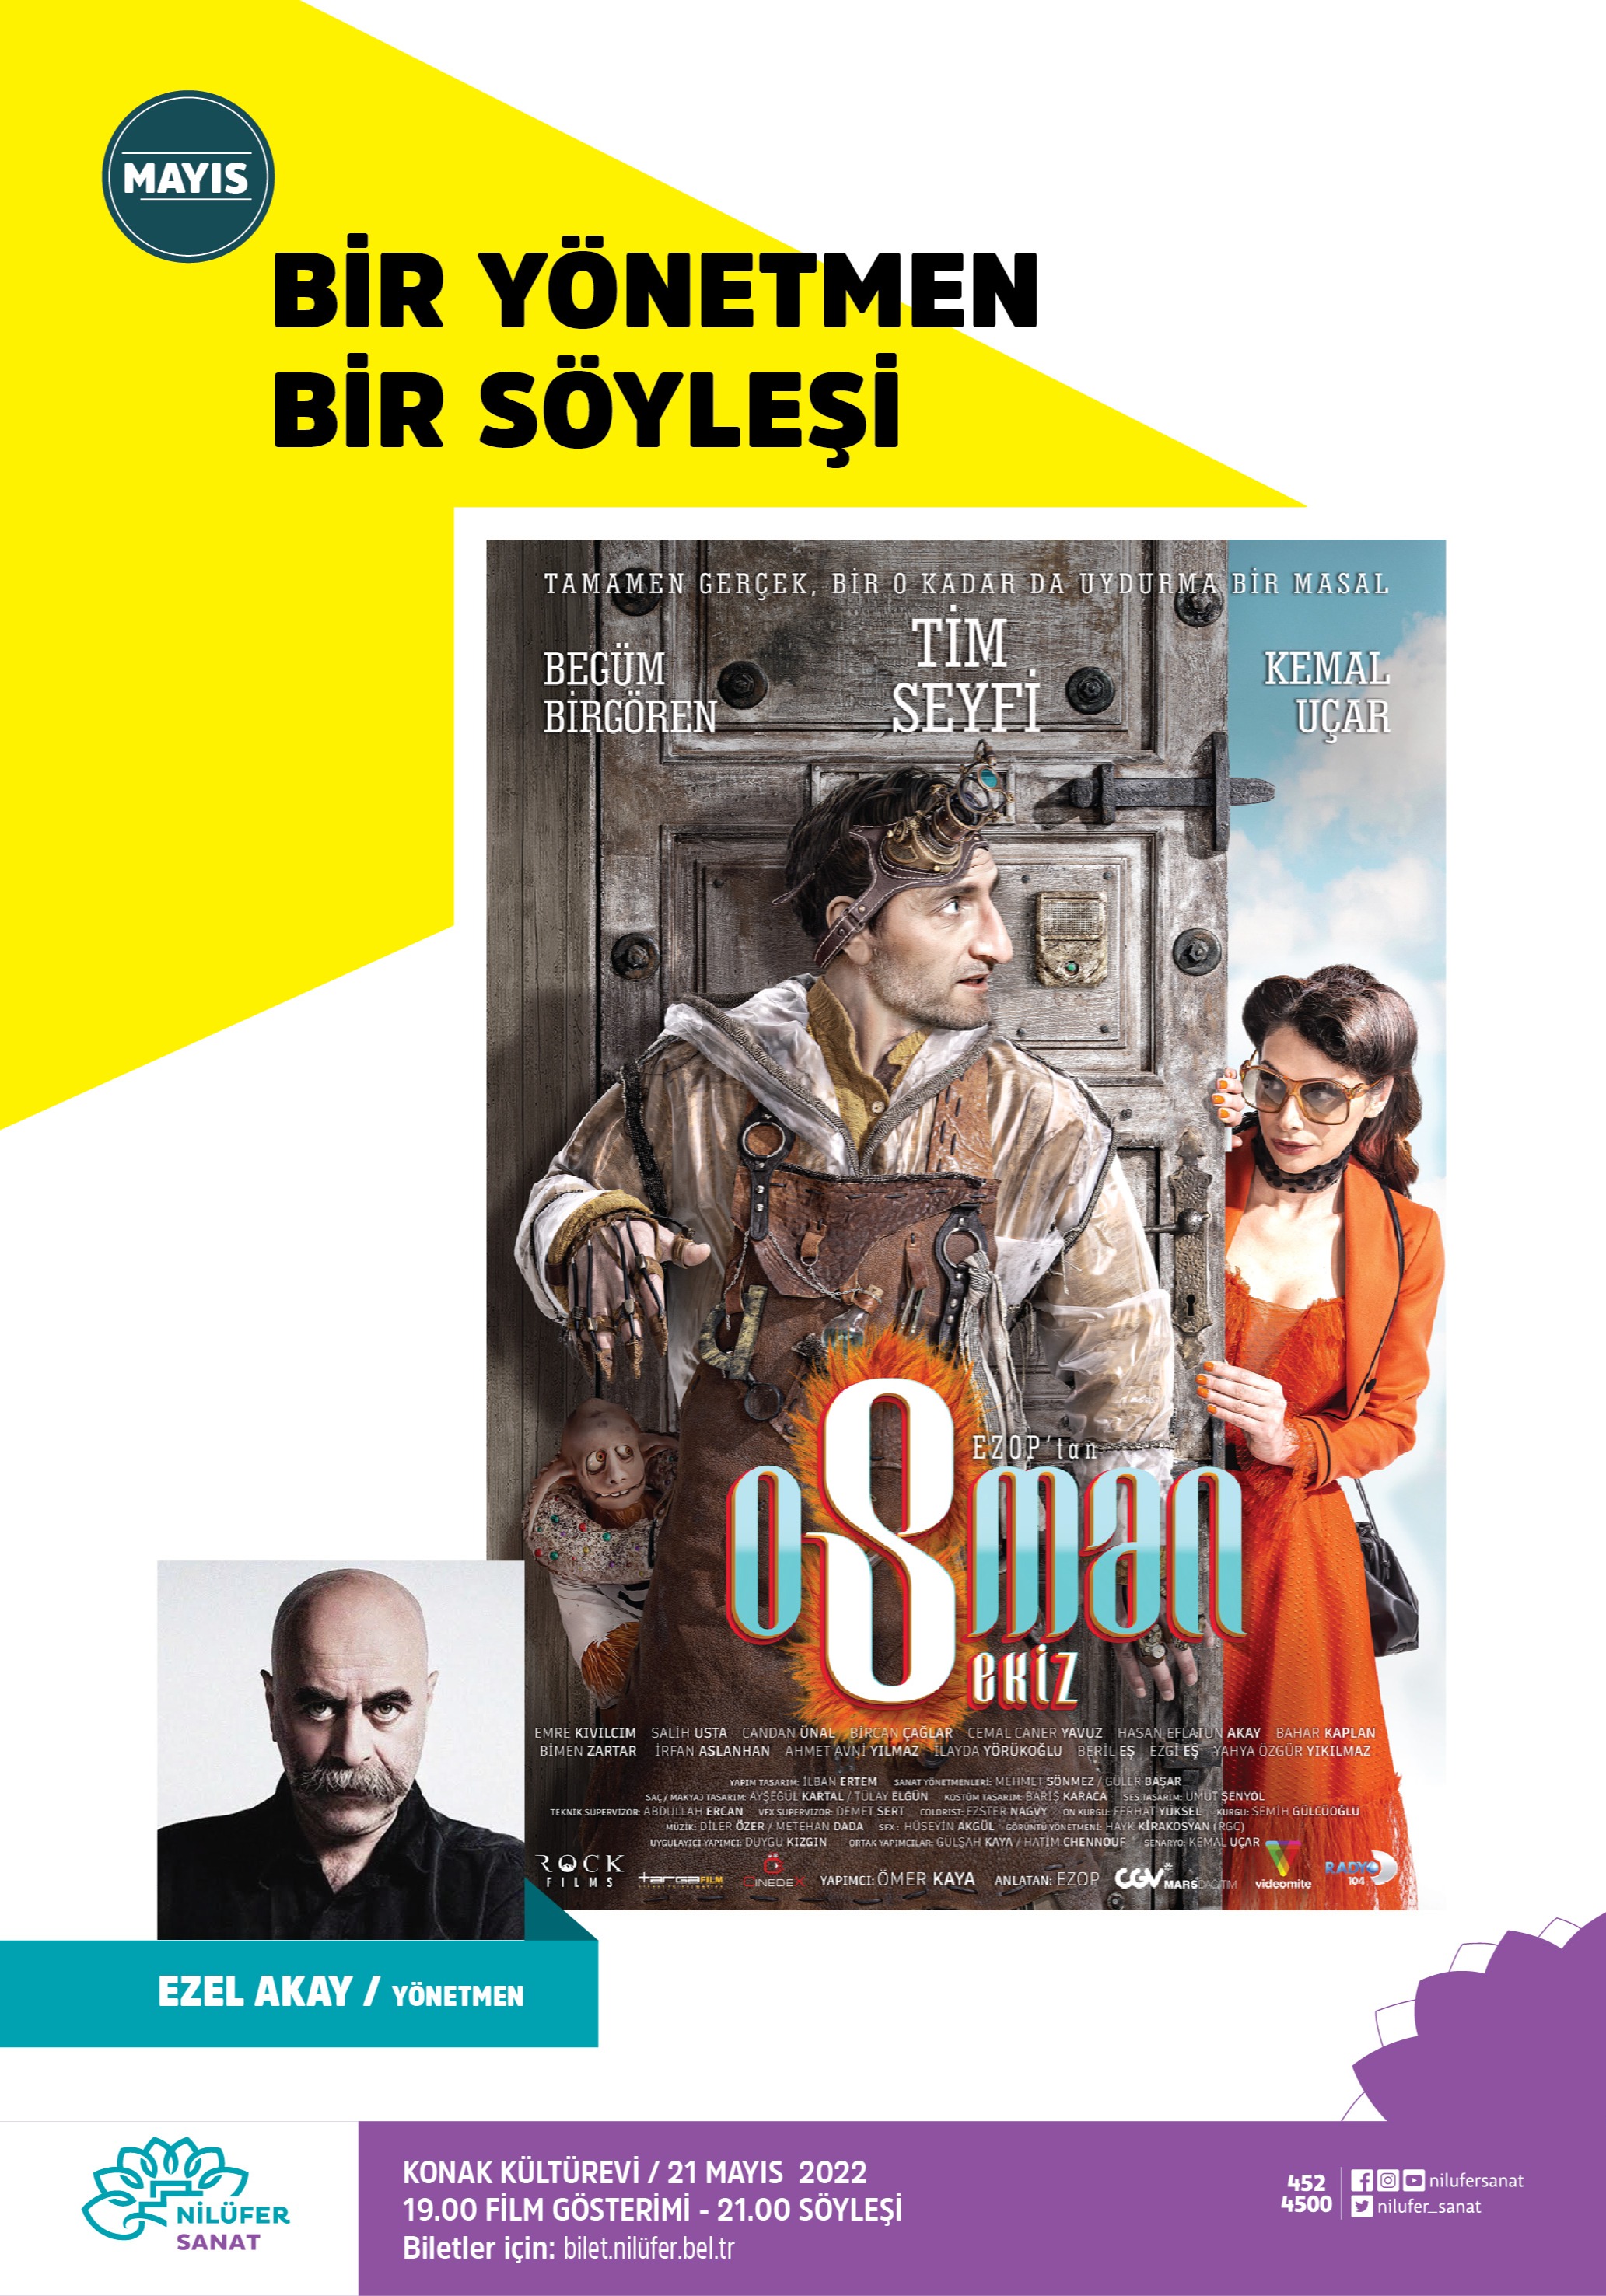 Bir Yönetmen Bir Söyleşi  "Osman Sekiz " Yönetmen Ezel Akay 